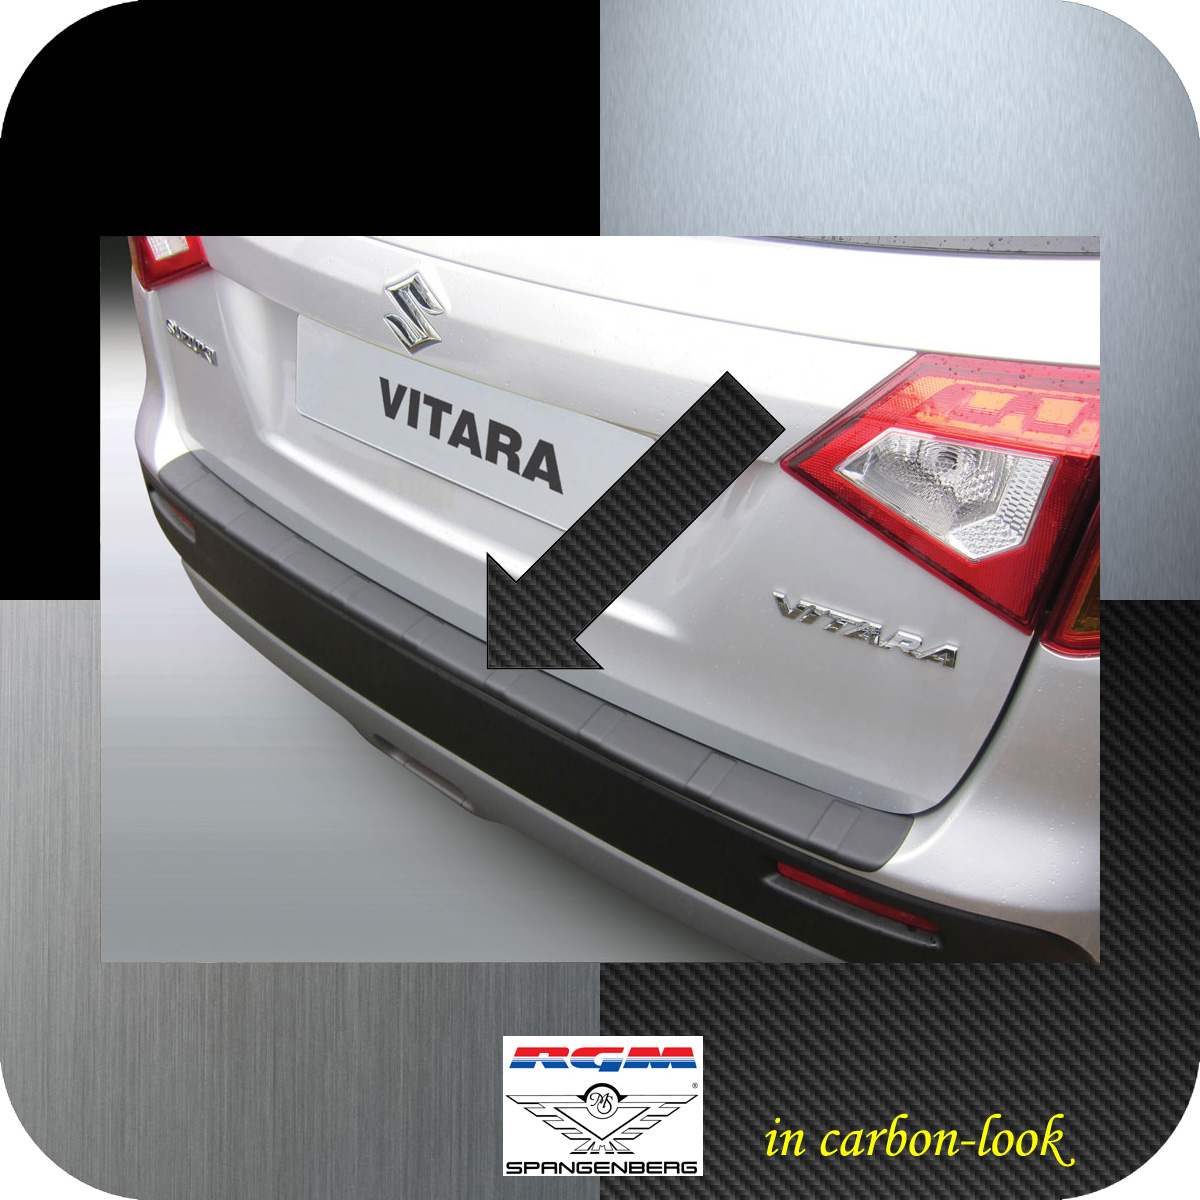 Ladekantenschutz Carbon-Look gerippt Suzuki Vitara SUV ab Bj. 03.2015- 3509995